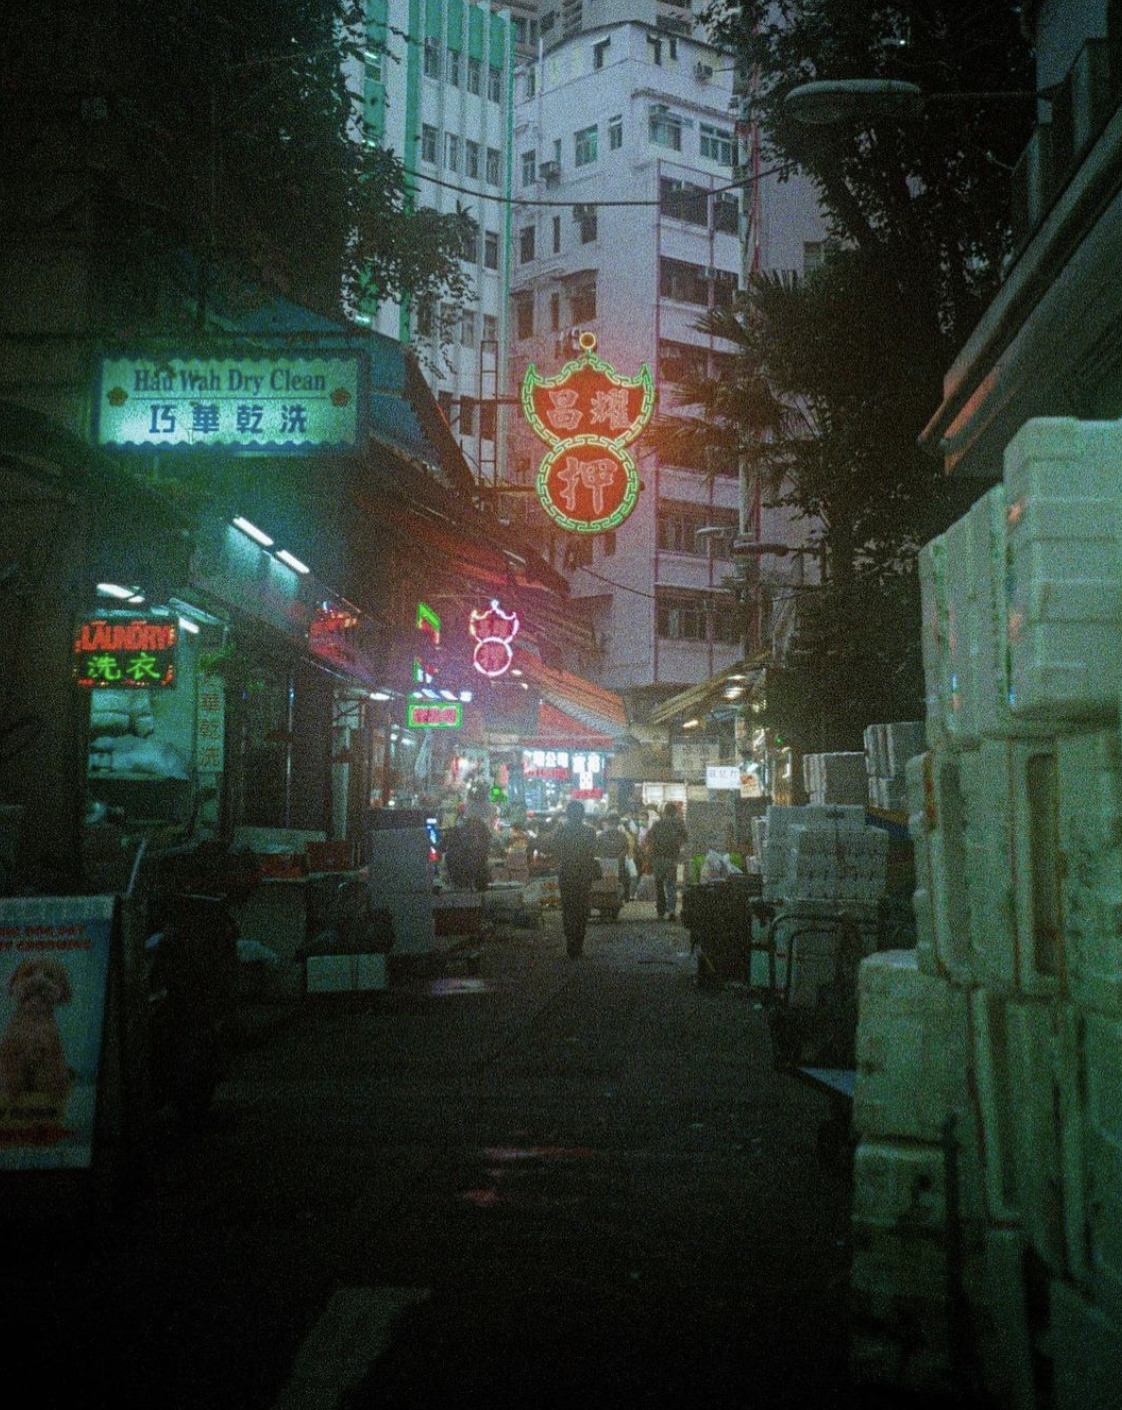 台湾の街並み